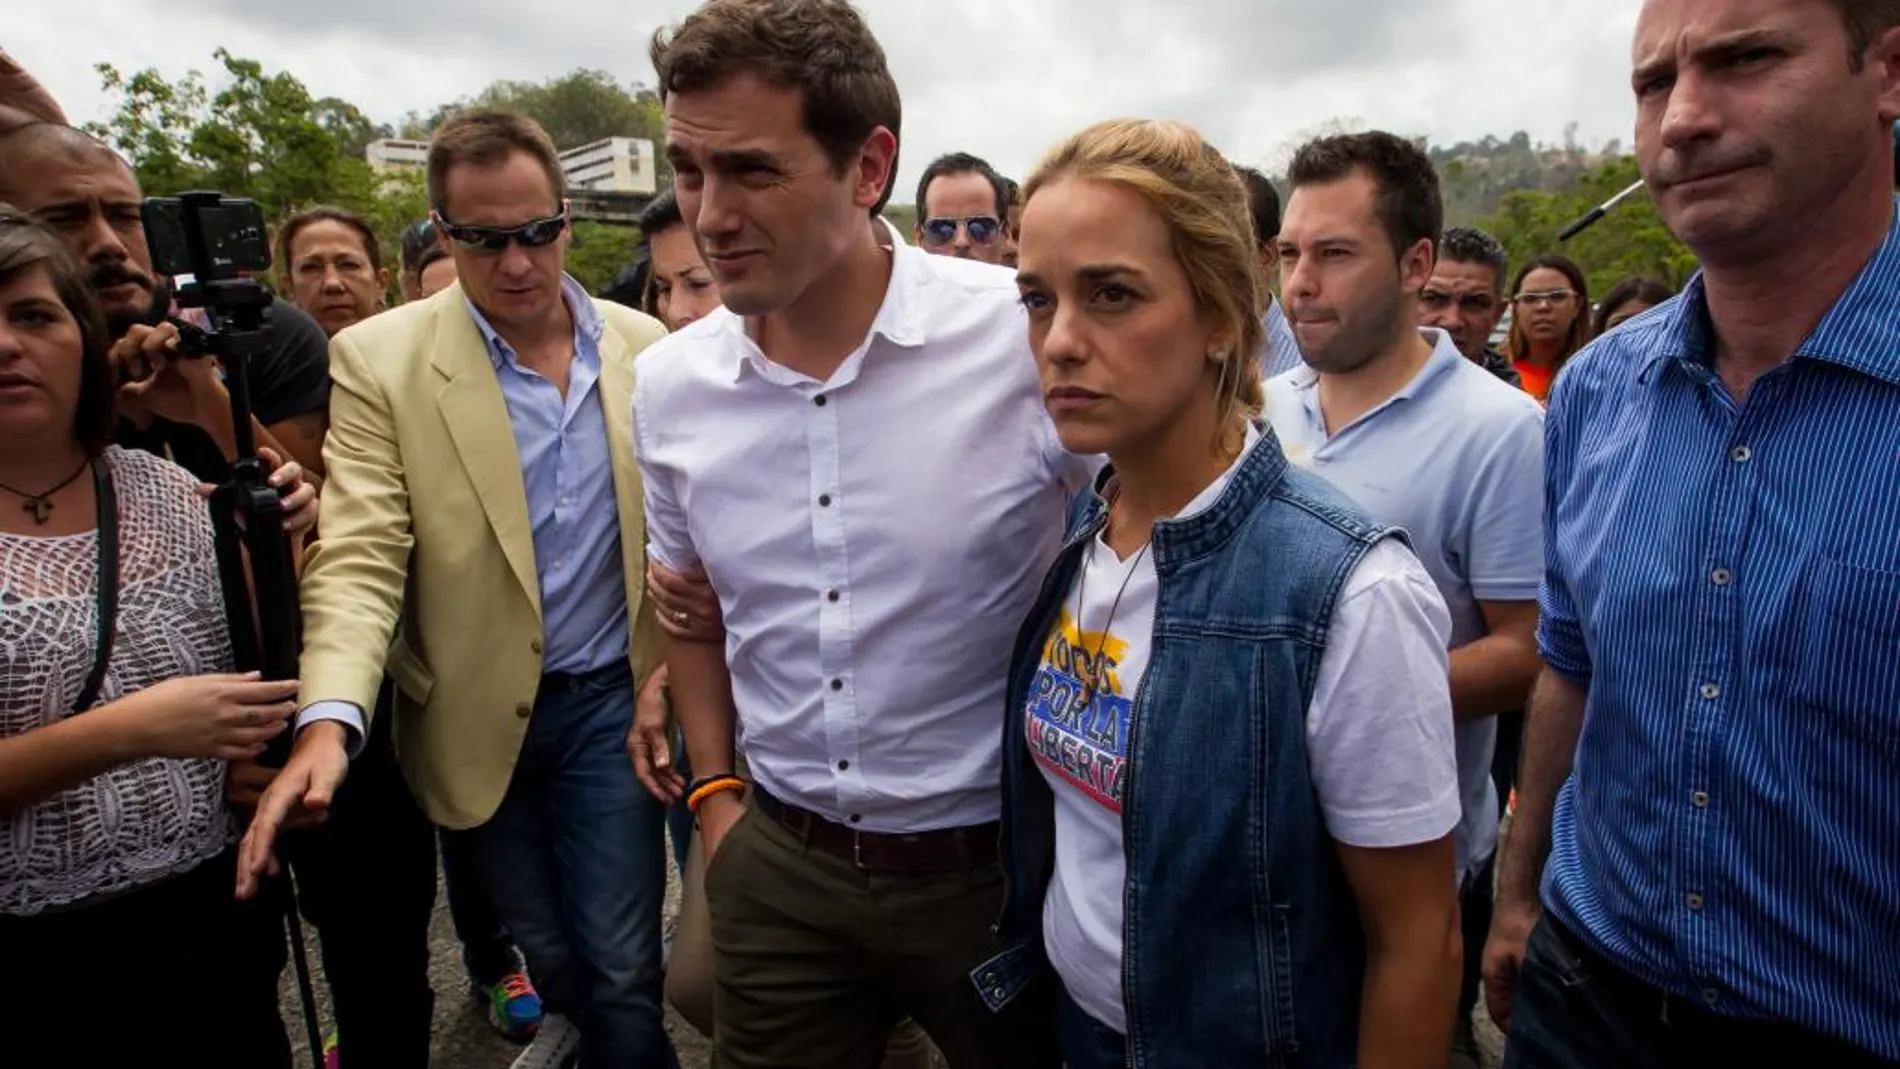 El líder de Ciudadanos (liberal), Albert Rivera (c) camina junto a la esposa del dirigente opositor venezolano Leopoldo López, Lilian Tintori, en las inmediaciones de la cárcel Ramo Verde